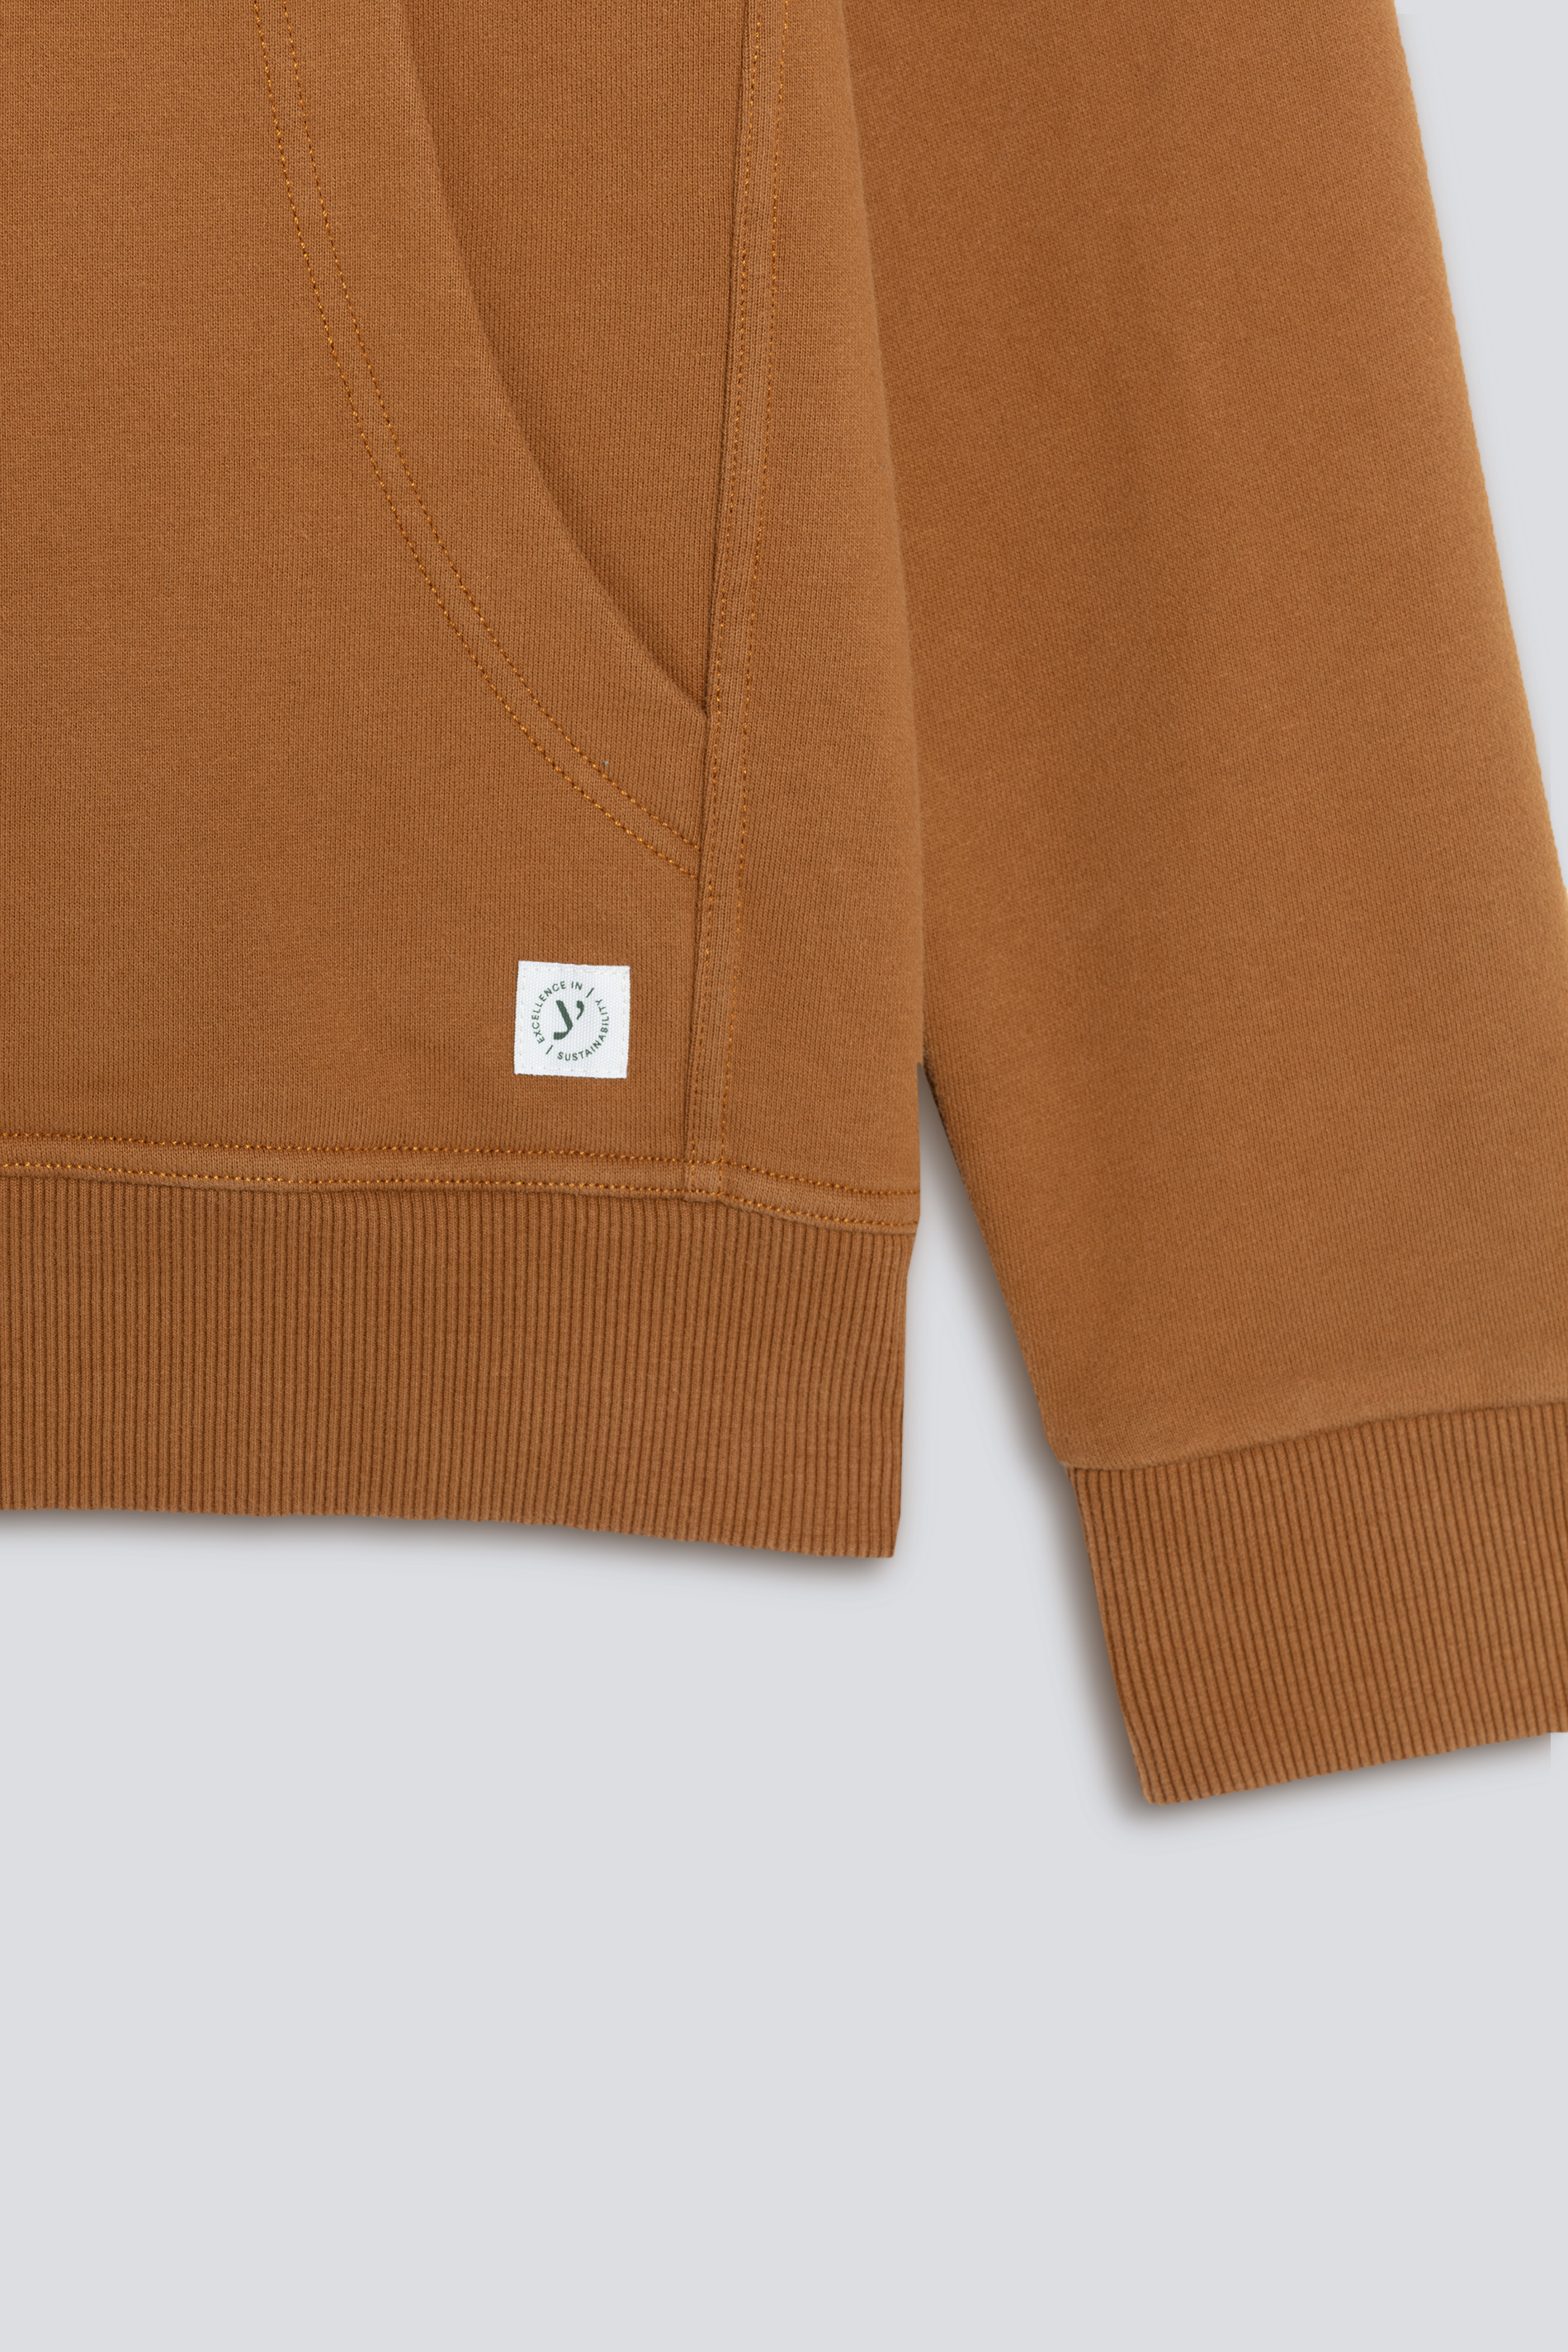 Hoodie-Sweatshirt Rubber Serie Soft Felpa Detailansicht 01 | mey®